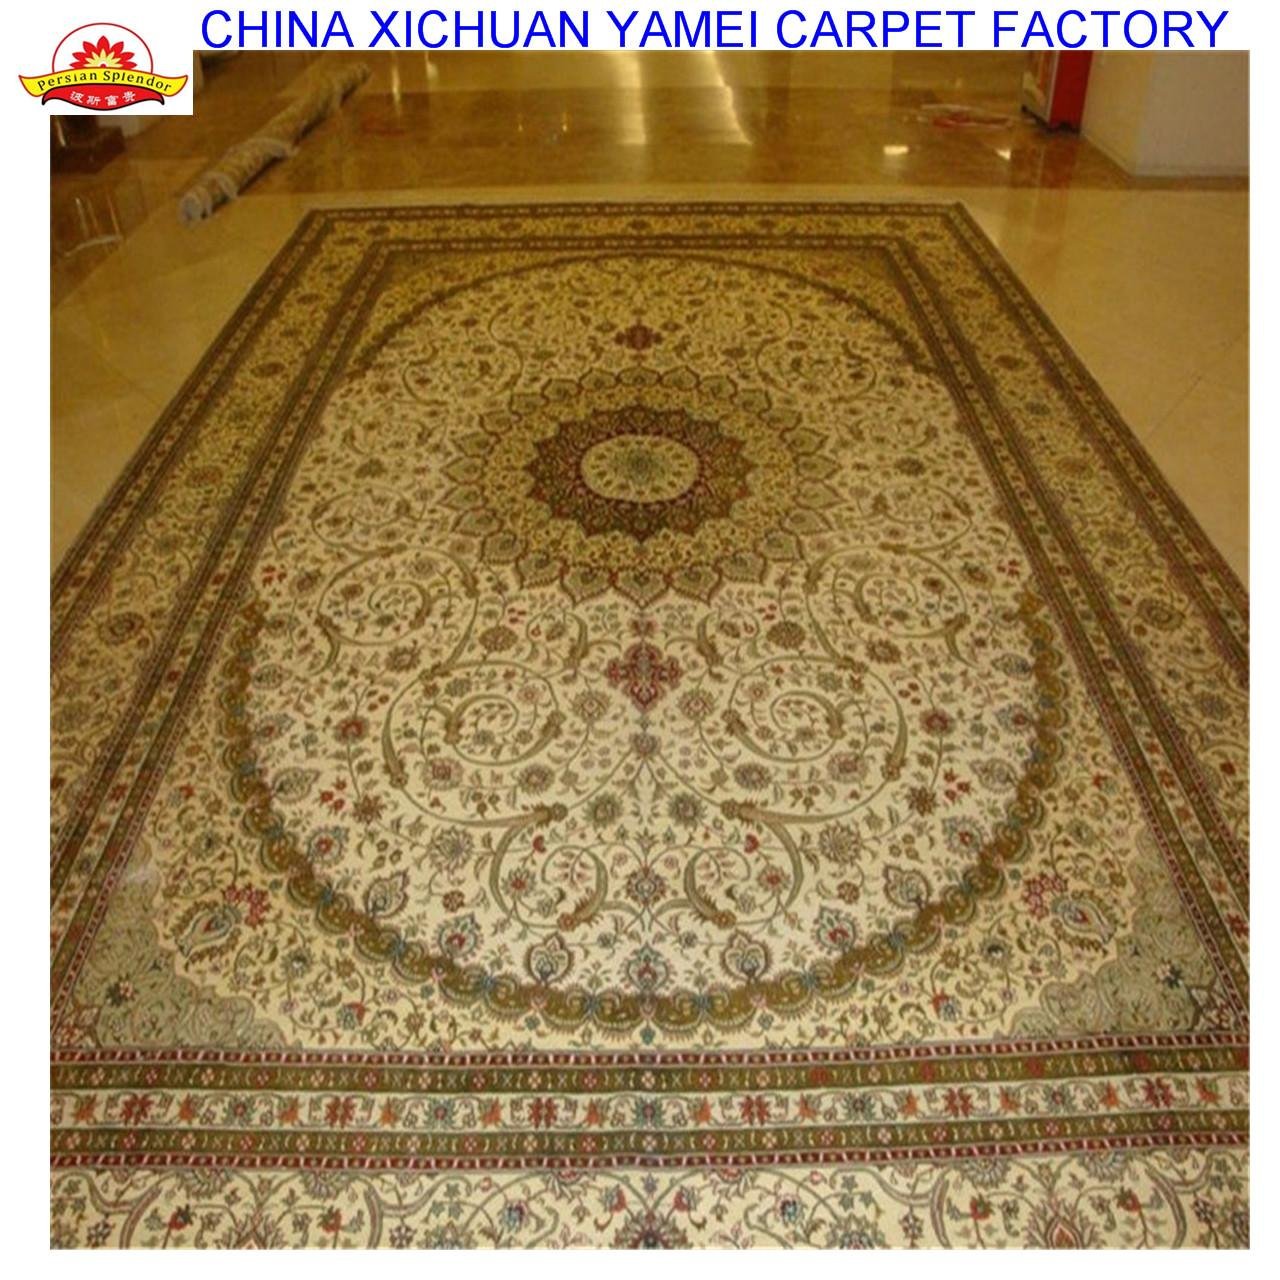 亚美生产手工优质丝毯 13826288657silk carpets  2